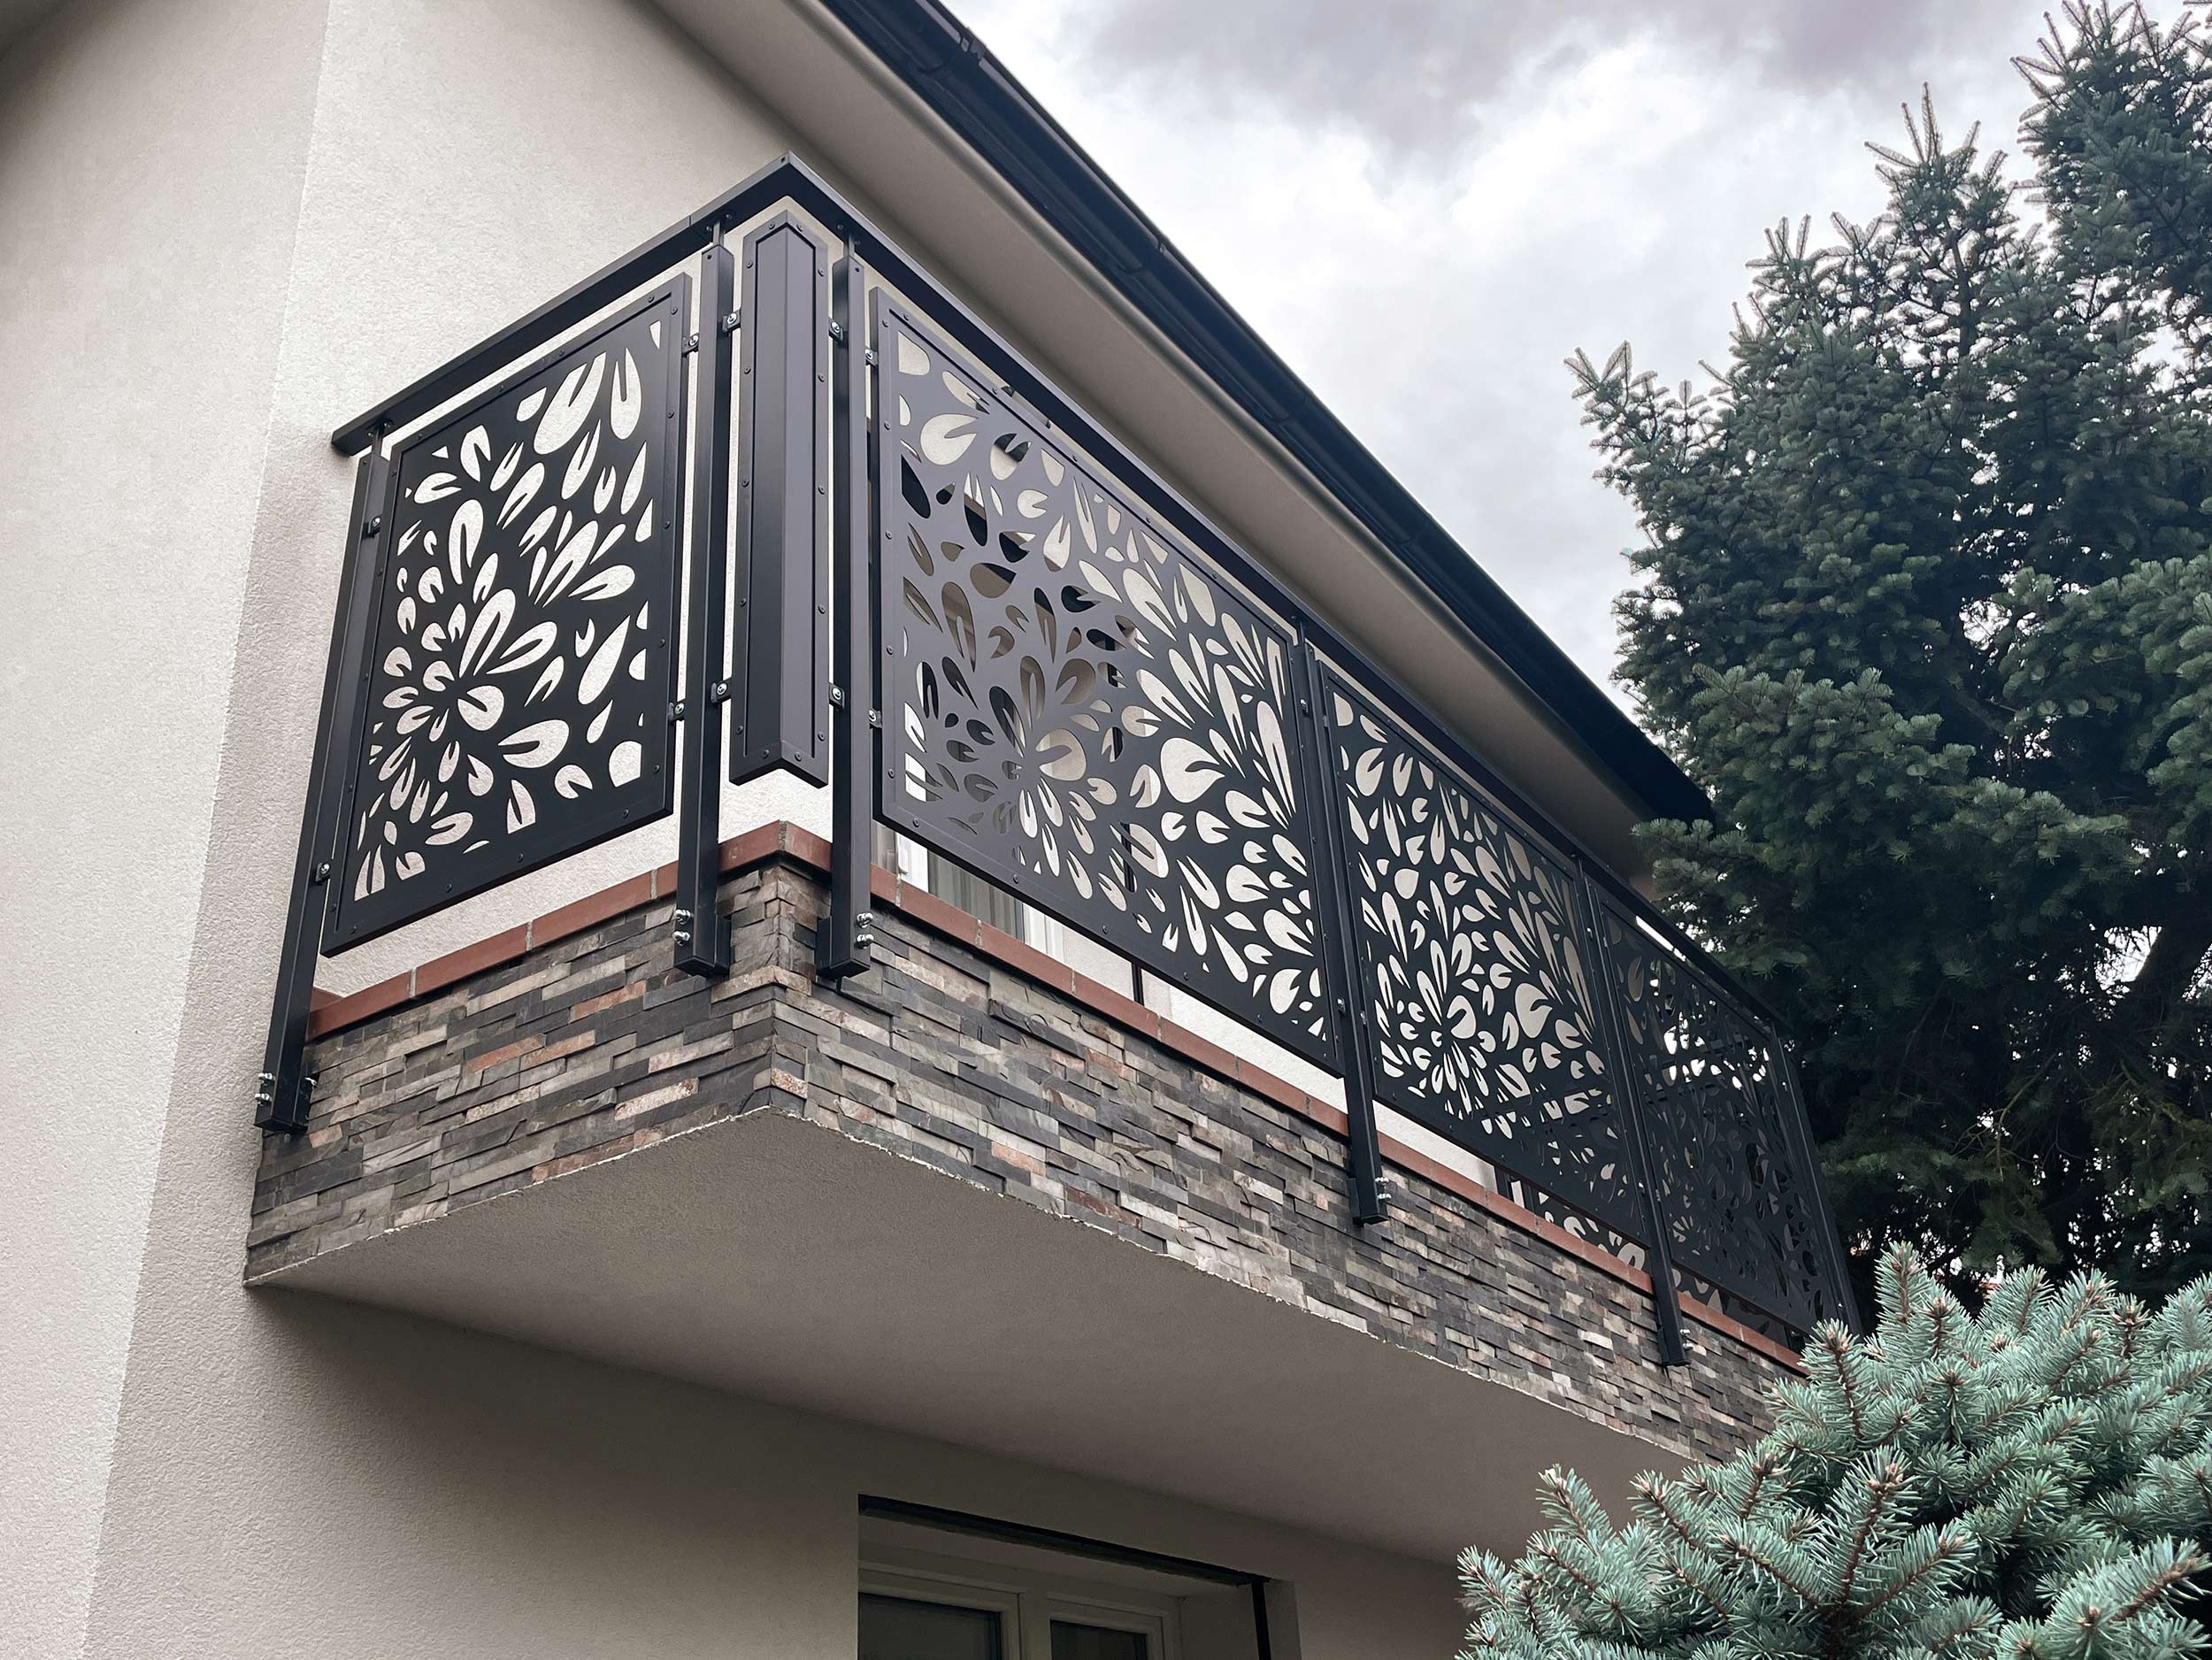 Modulové venkovní ocelové balkonové zábradlí PROWERK s designovou výplní s laserem vypálenou kresbou květů. Zábradlí žárově zinkované a lakované práškovou barvou.